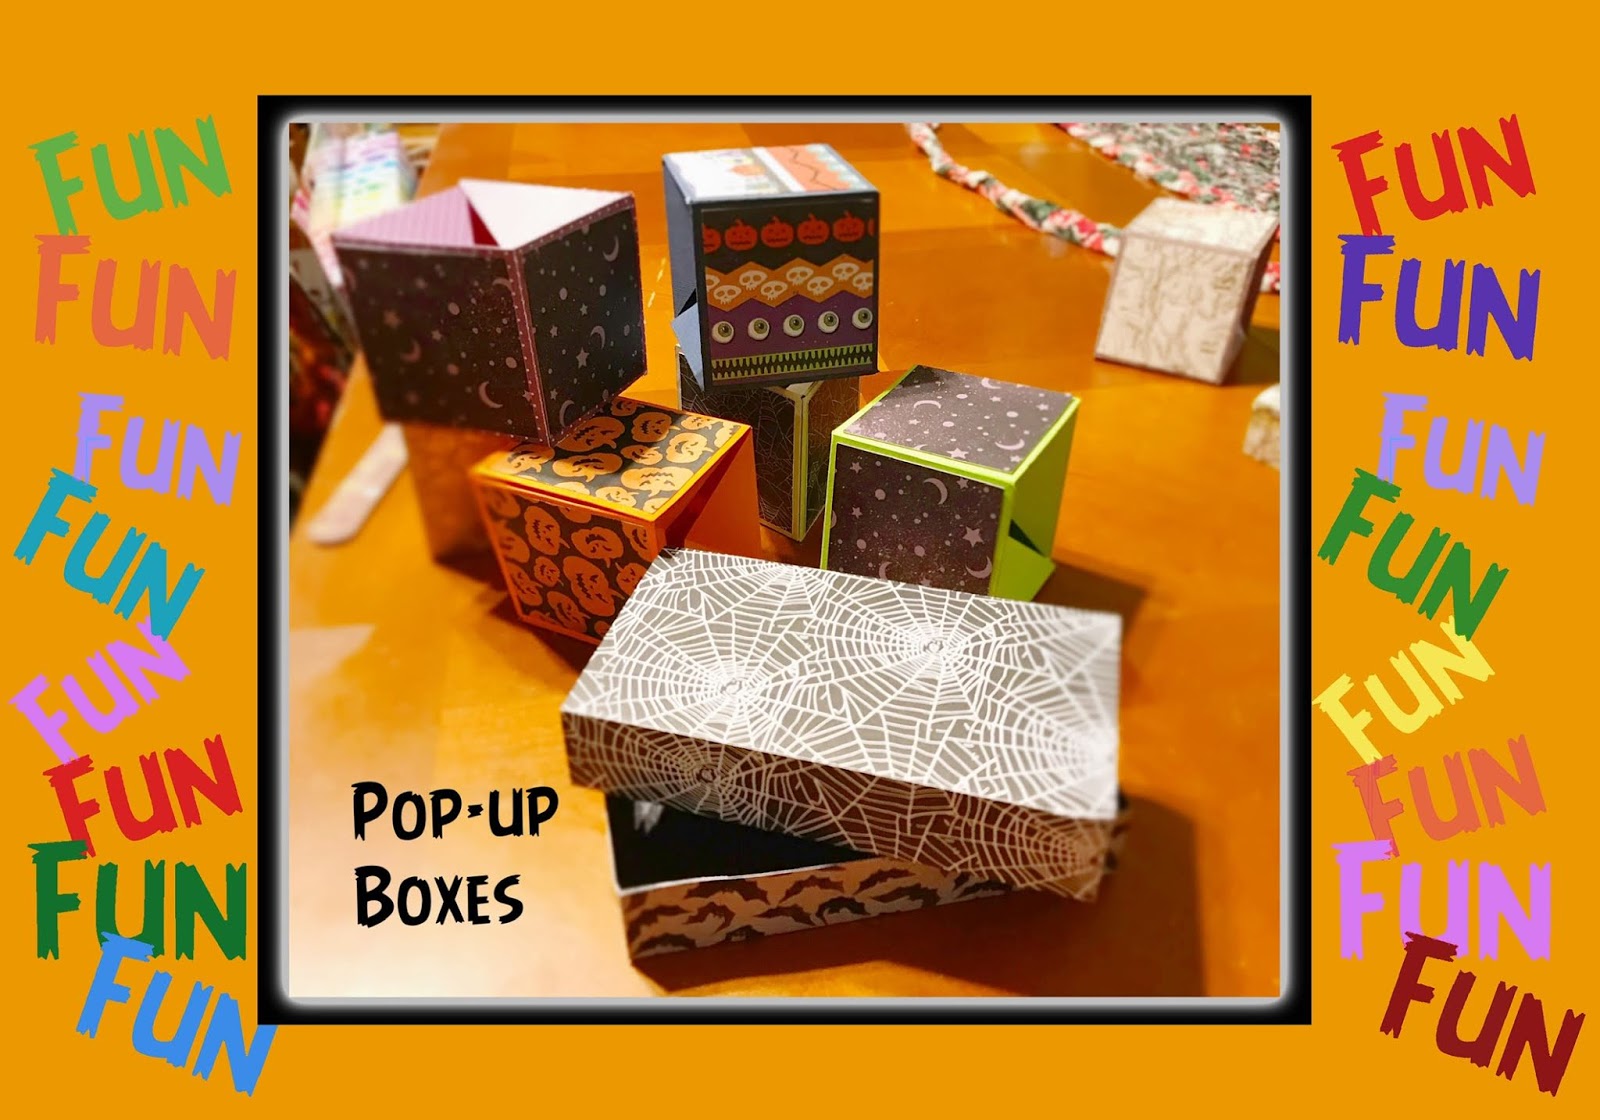 Pop boxes